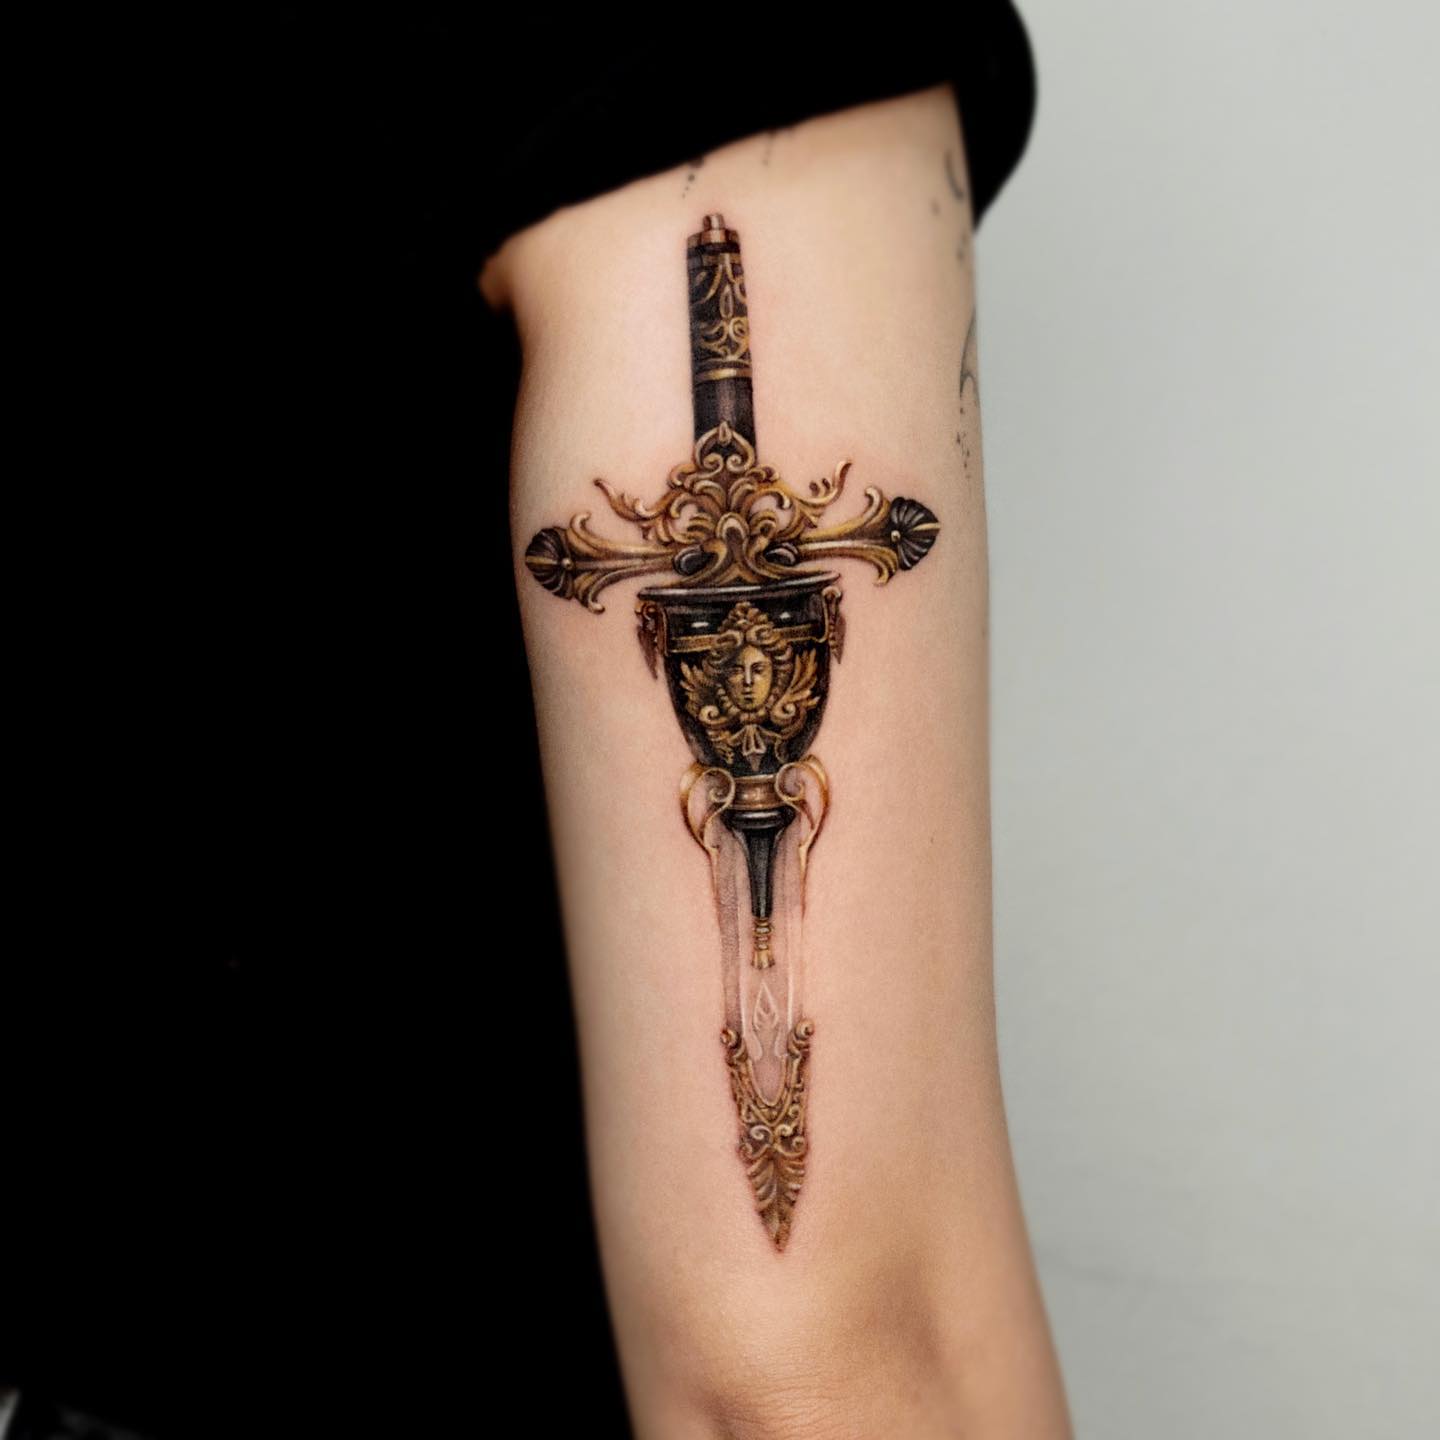 dagger in heart tattooTikTok Search